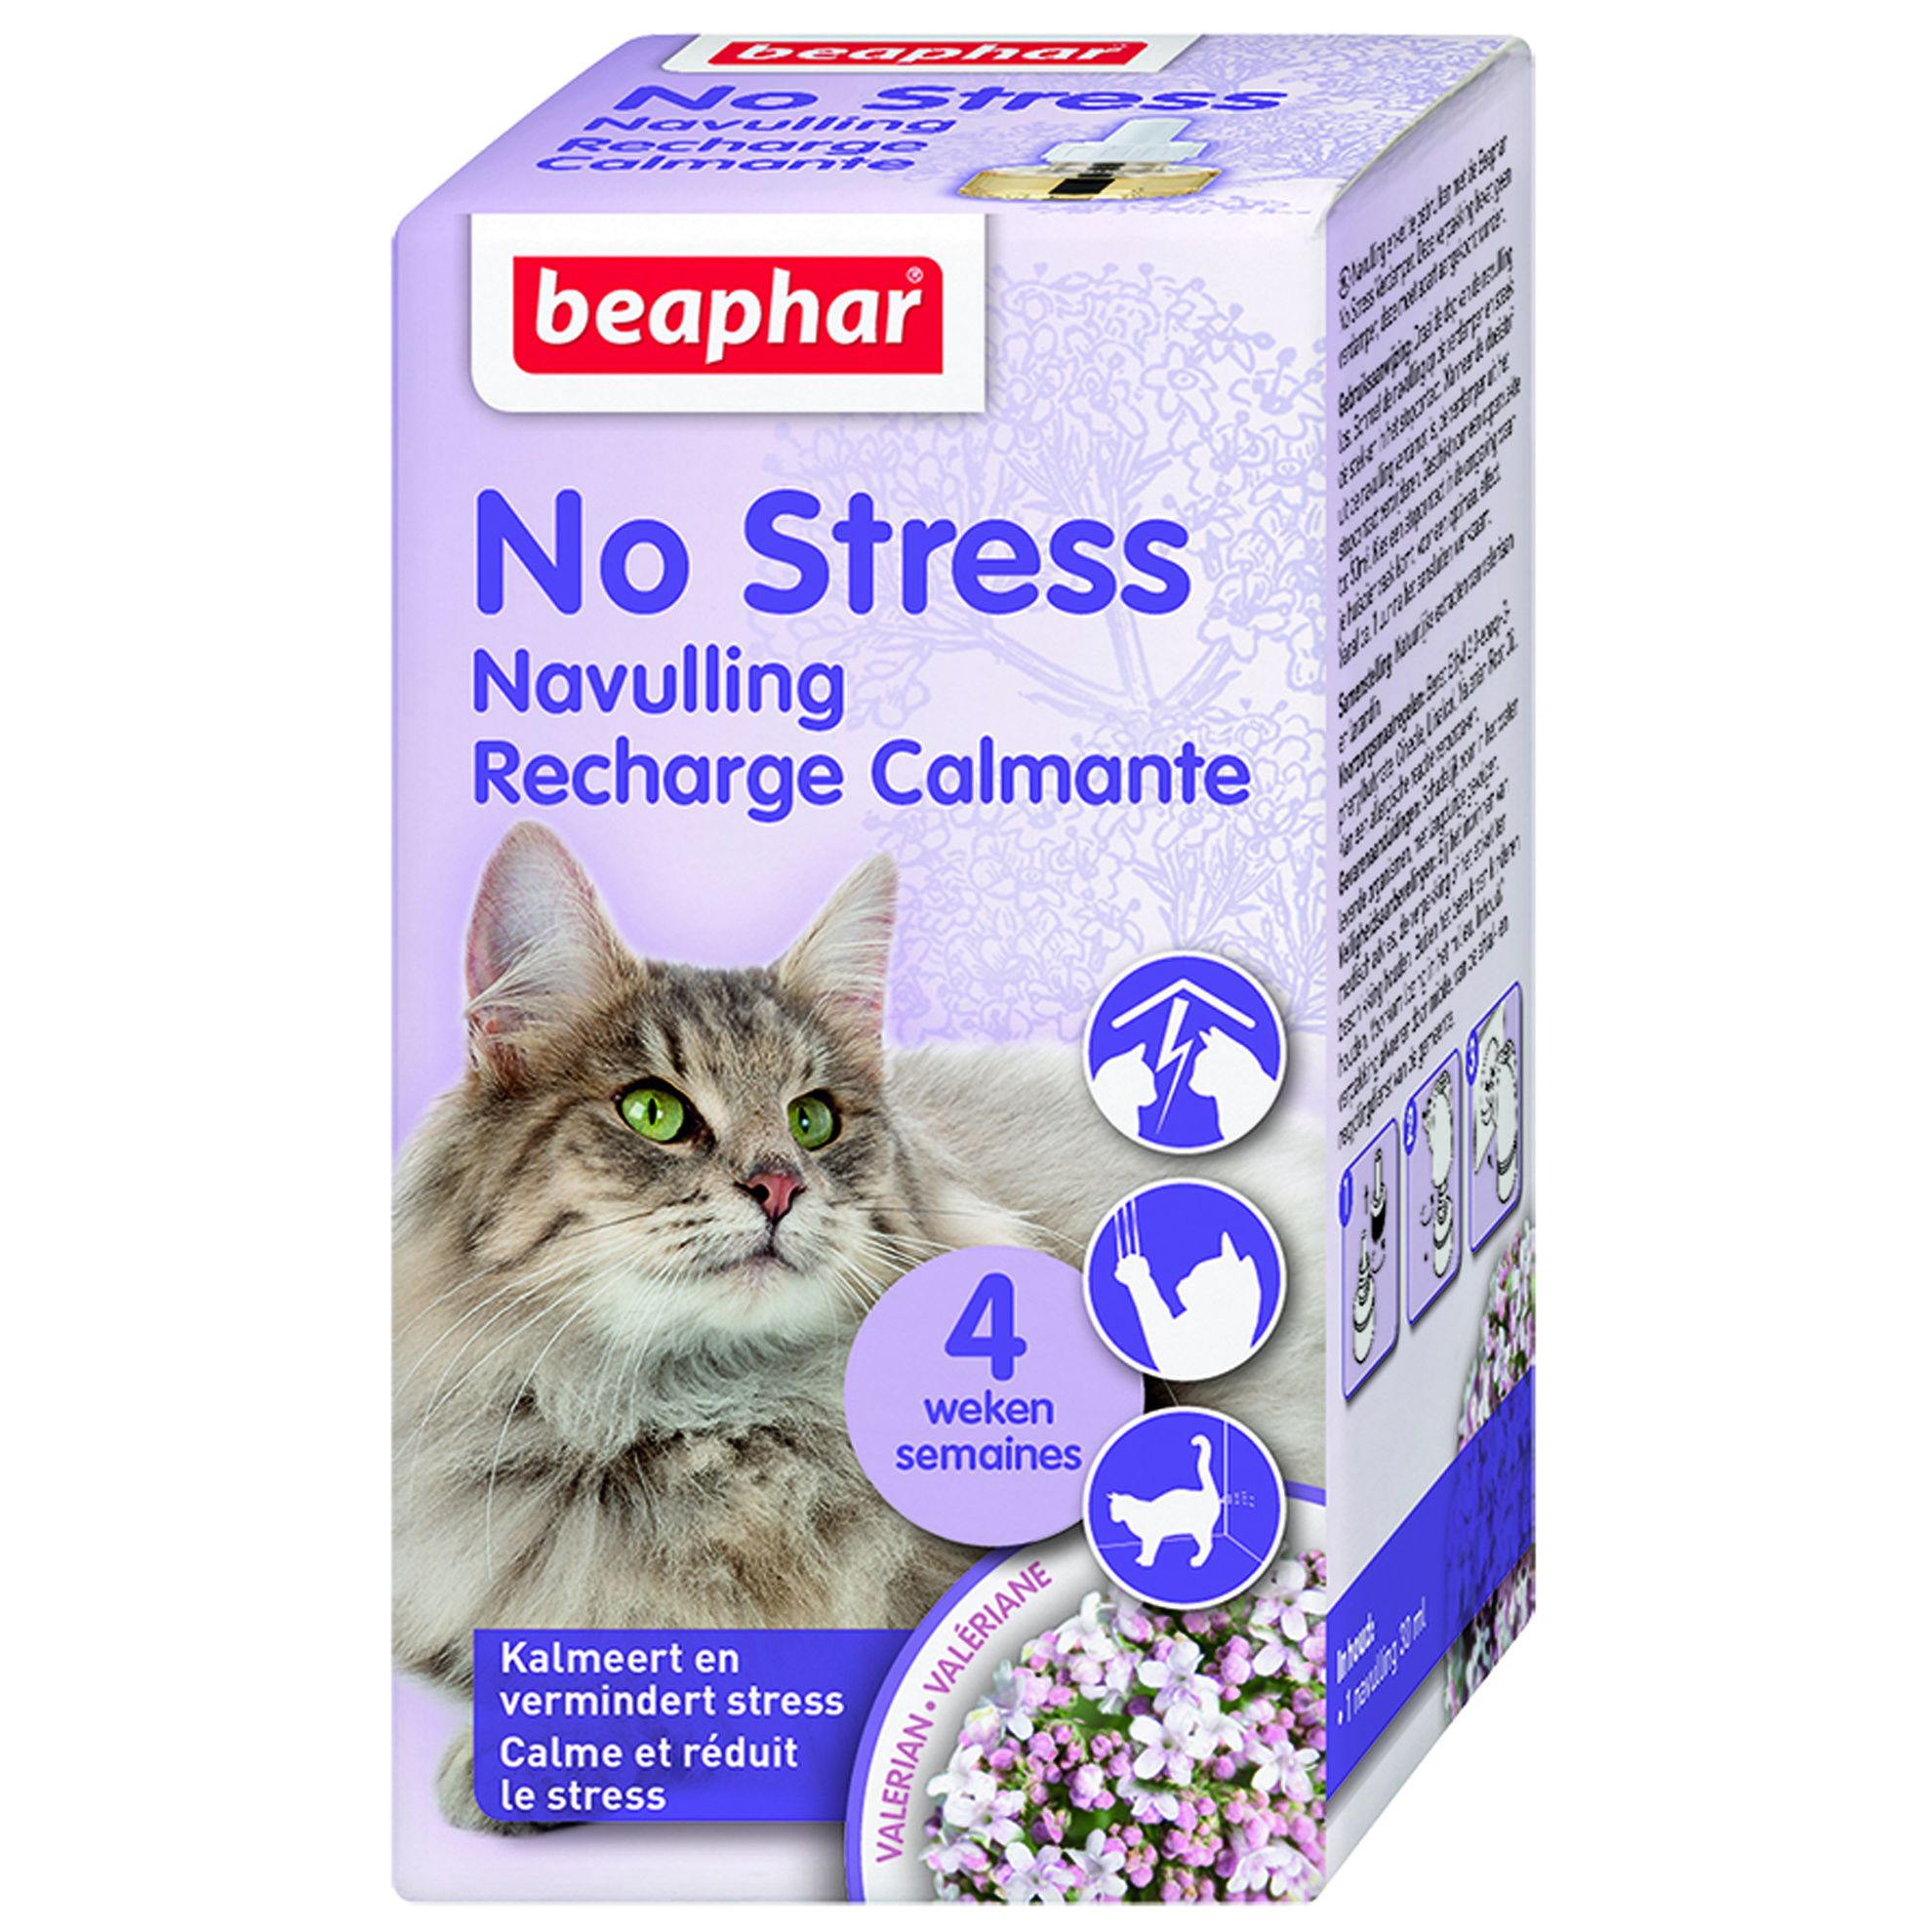 Recharge CatComfort Excellence aux phéromones pour chat